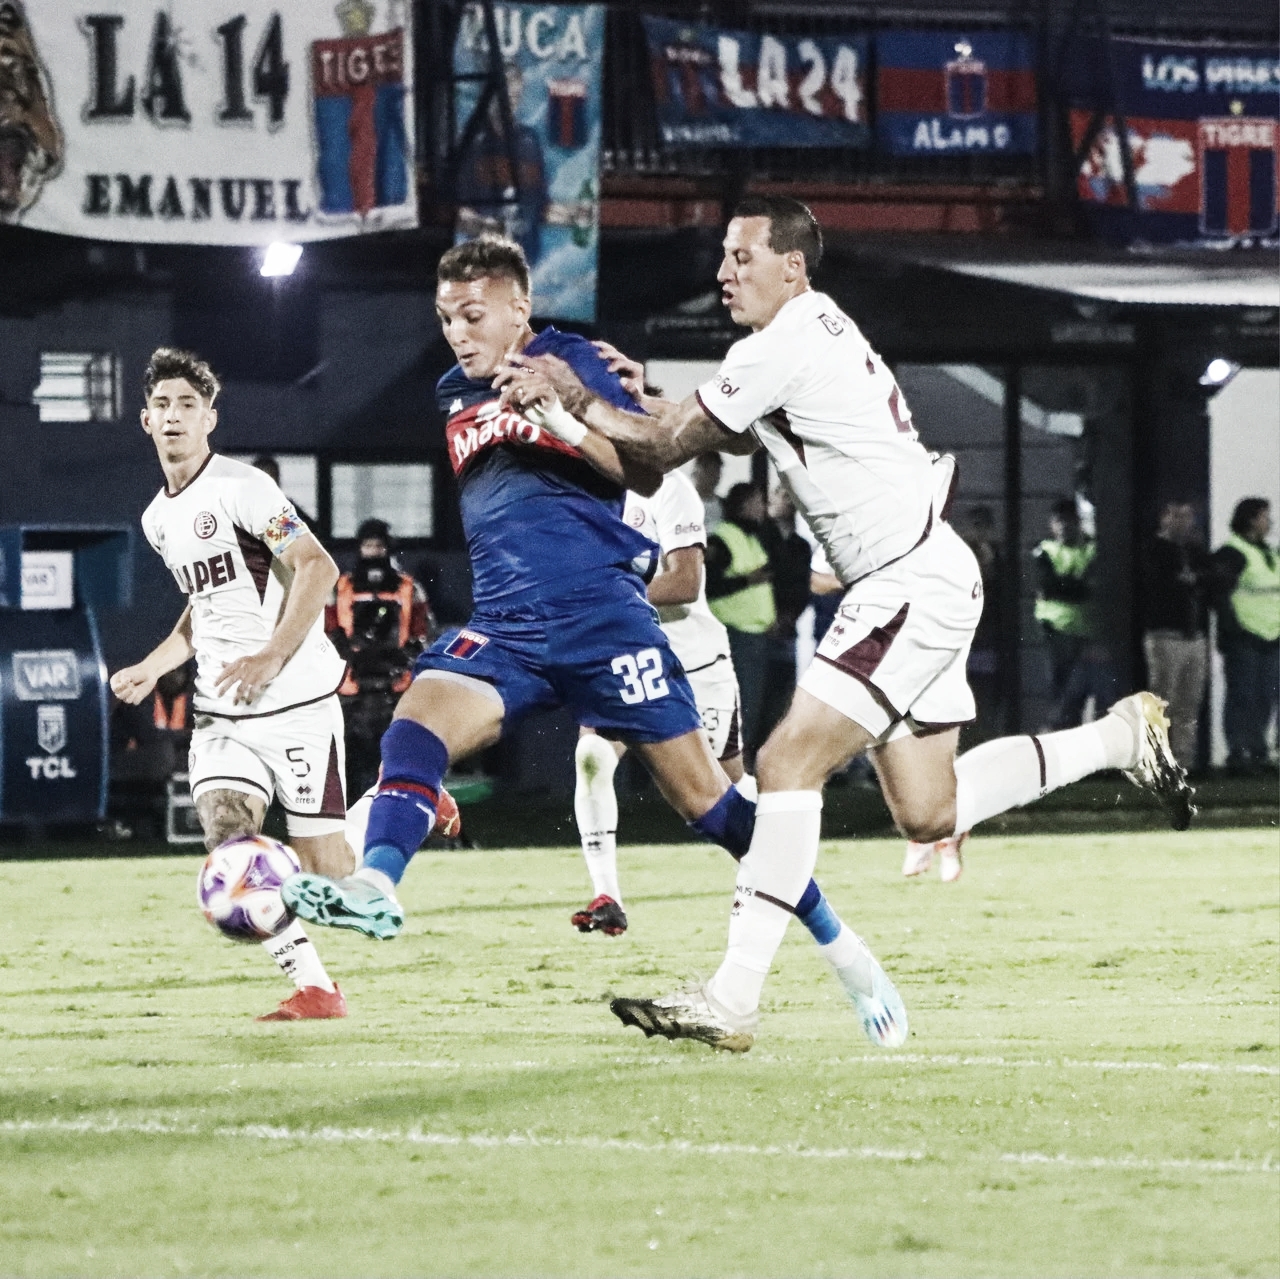 Tigre volvió a la victoria con un gol agónico frente a Lanús 